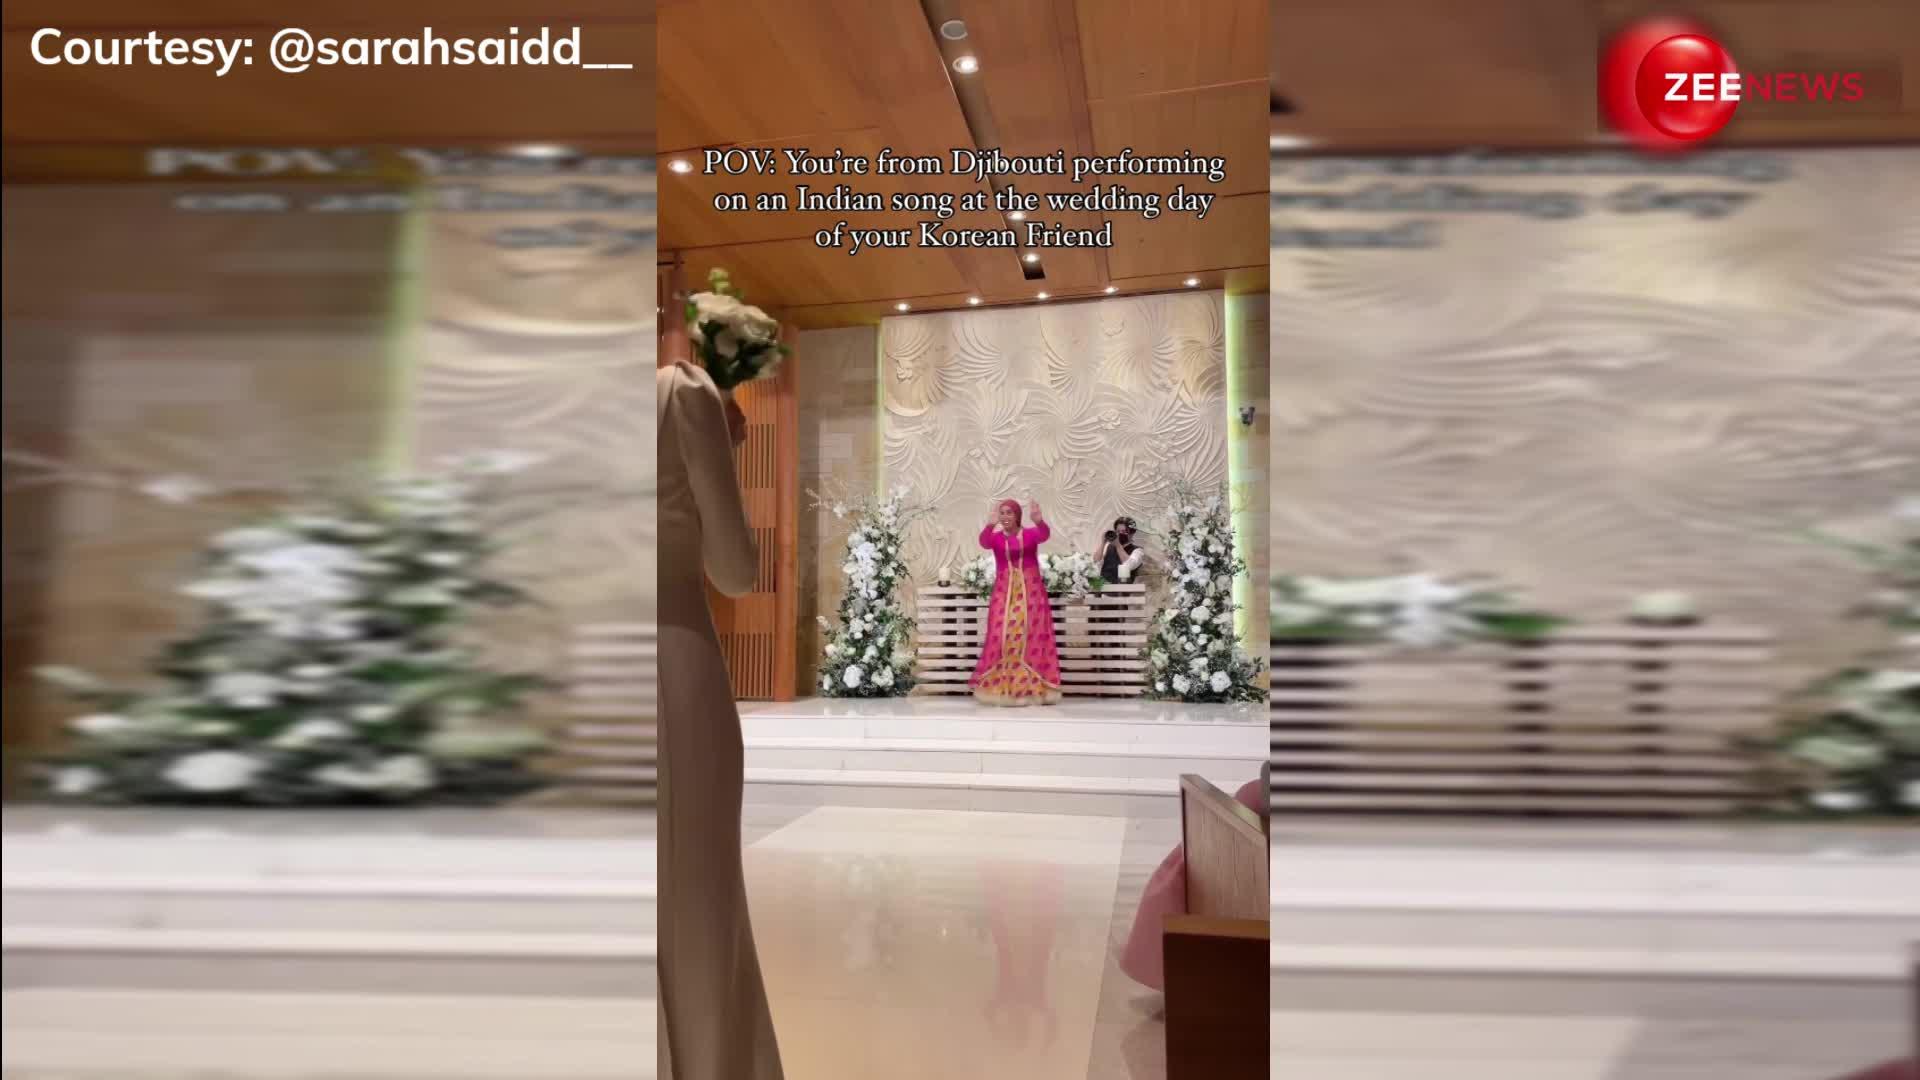 कोरियन दोस्त की शादी में अफ्रीकी महिला ने किया 'Chaudhary' गाने पर बहुत प्यारा डांस, सोशल मीडिया पर छाया वीडियो